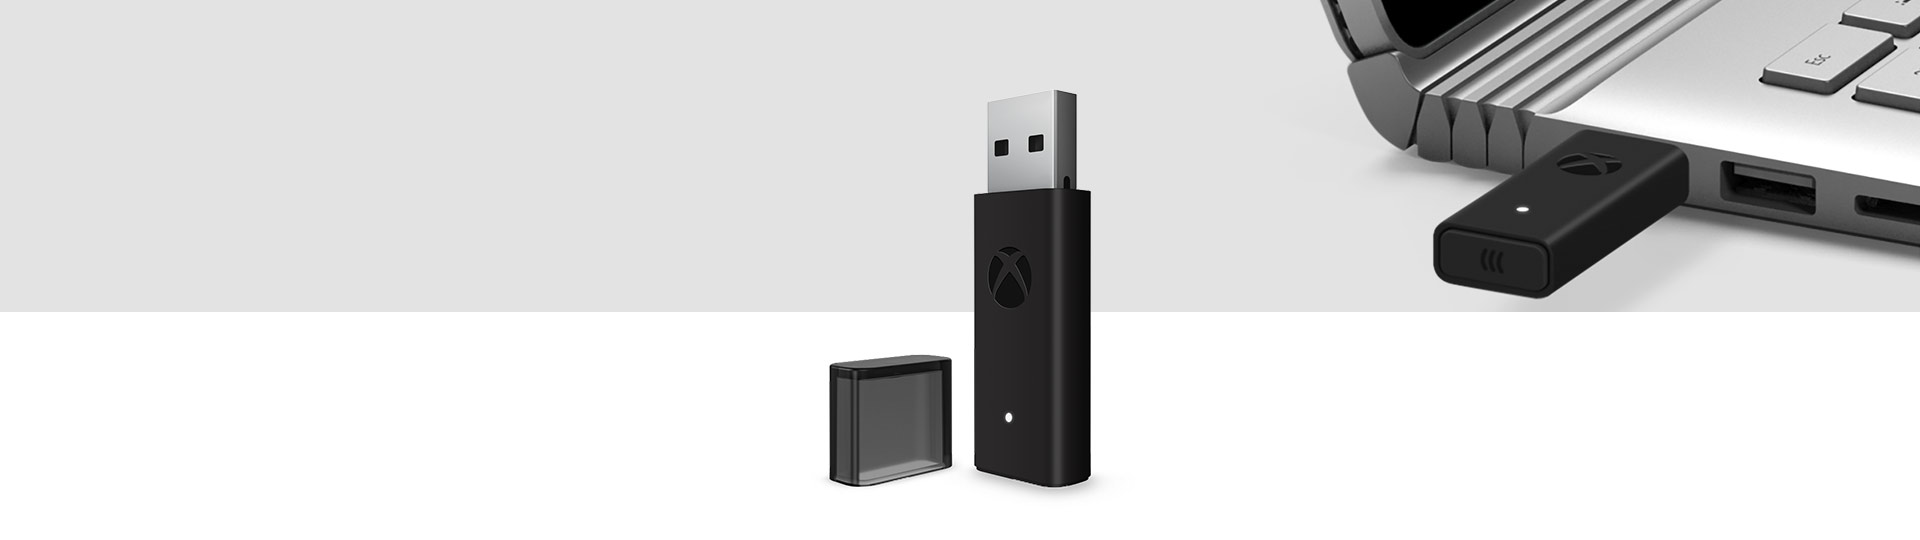 Langaton Xbox-ohjainsovitin Windows 10:lle ja langaton Xbox-sovitin liitettynä taustalla olevan kannettavan tietokoneen USB-porttiin